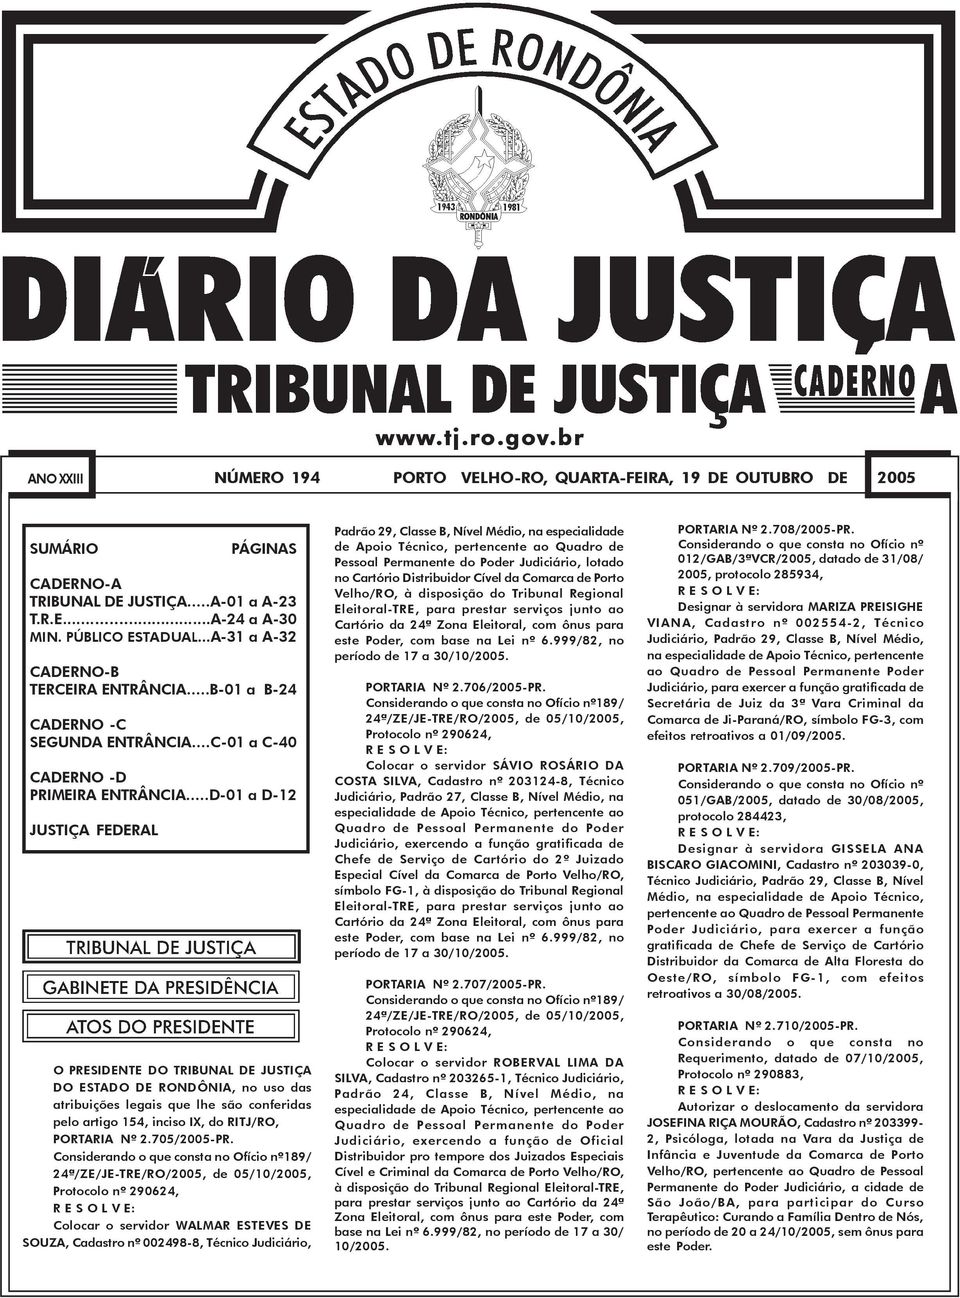 ..D-01 a D-12 JUSTIÇA FEDERAL O PRESIDENTE DO TRIBUNAL DE JUSTIÇA DO ESTADO DE RONDÔNIA, no uso das atribuições legais que lhe são conferidas pelo artigo 154, inciso IX, do RITJ/RO, PORTARIA Nº 2.